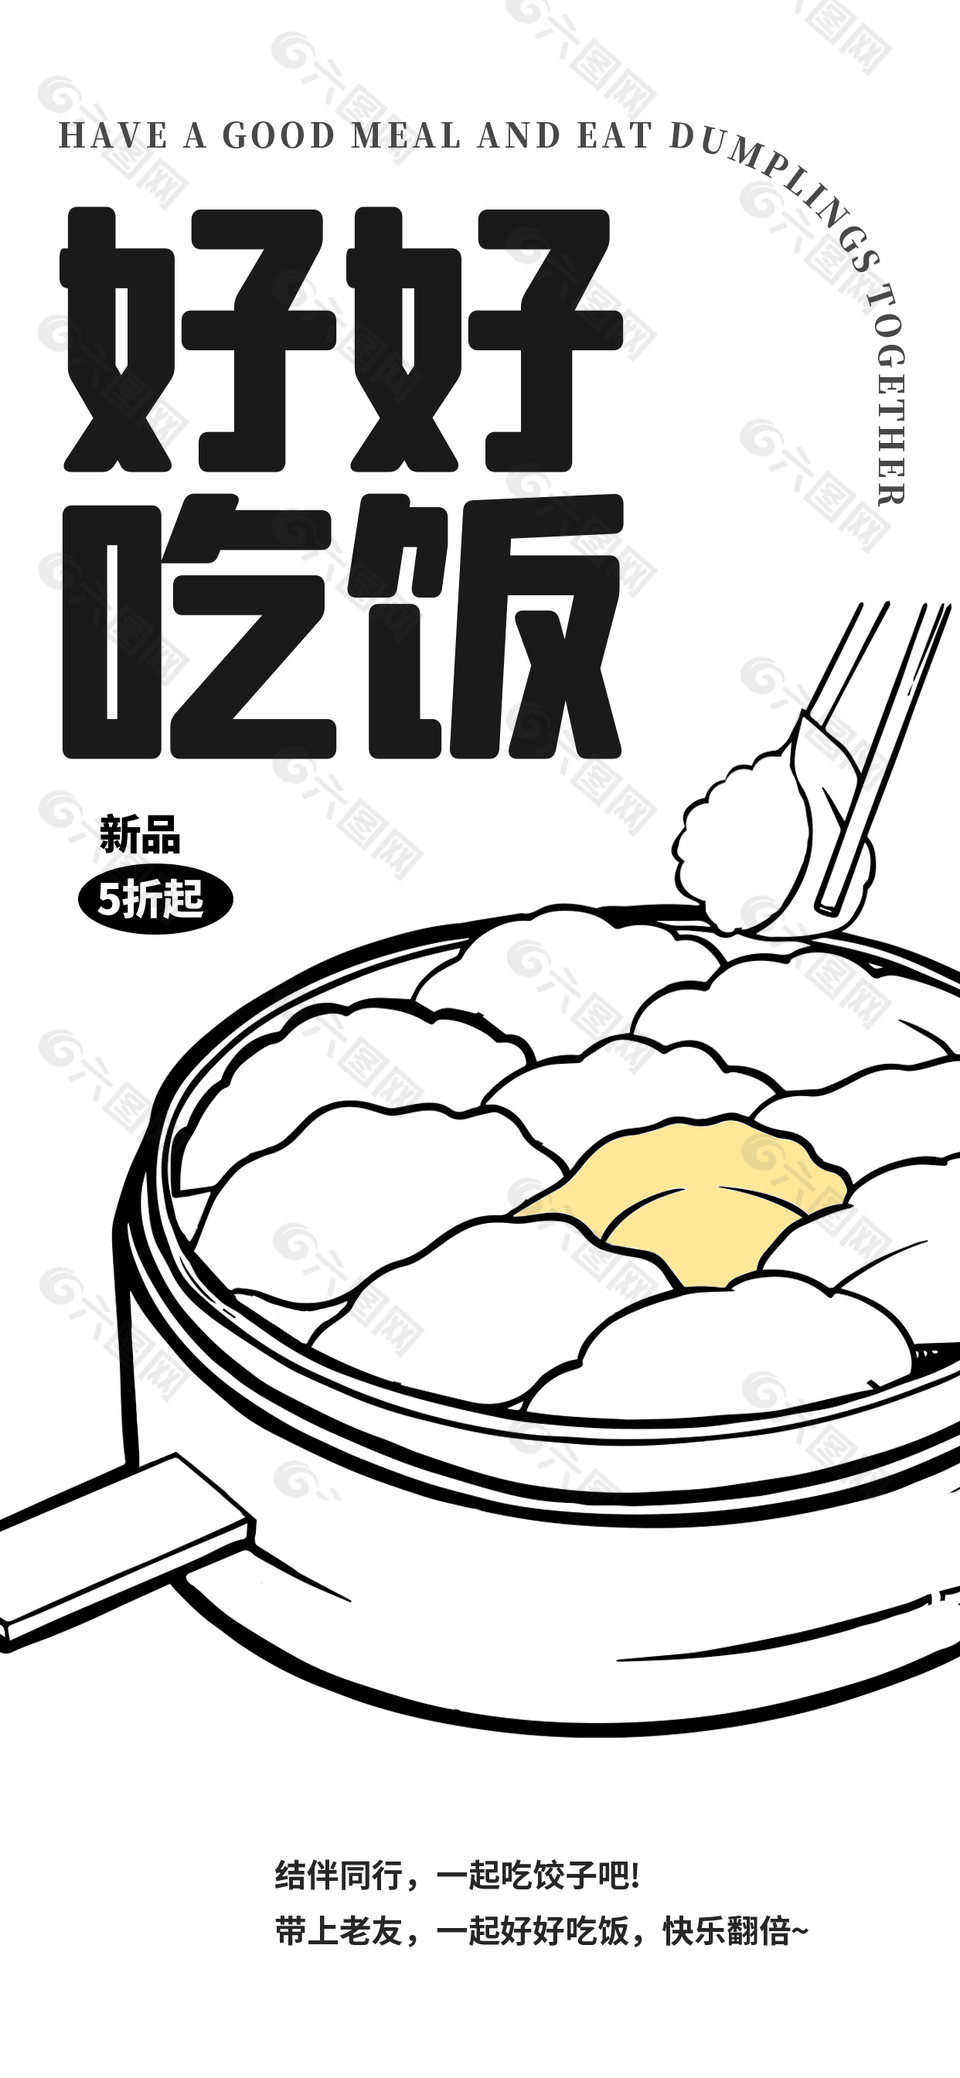 好好吃饭饺子创意插画海报